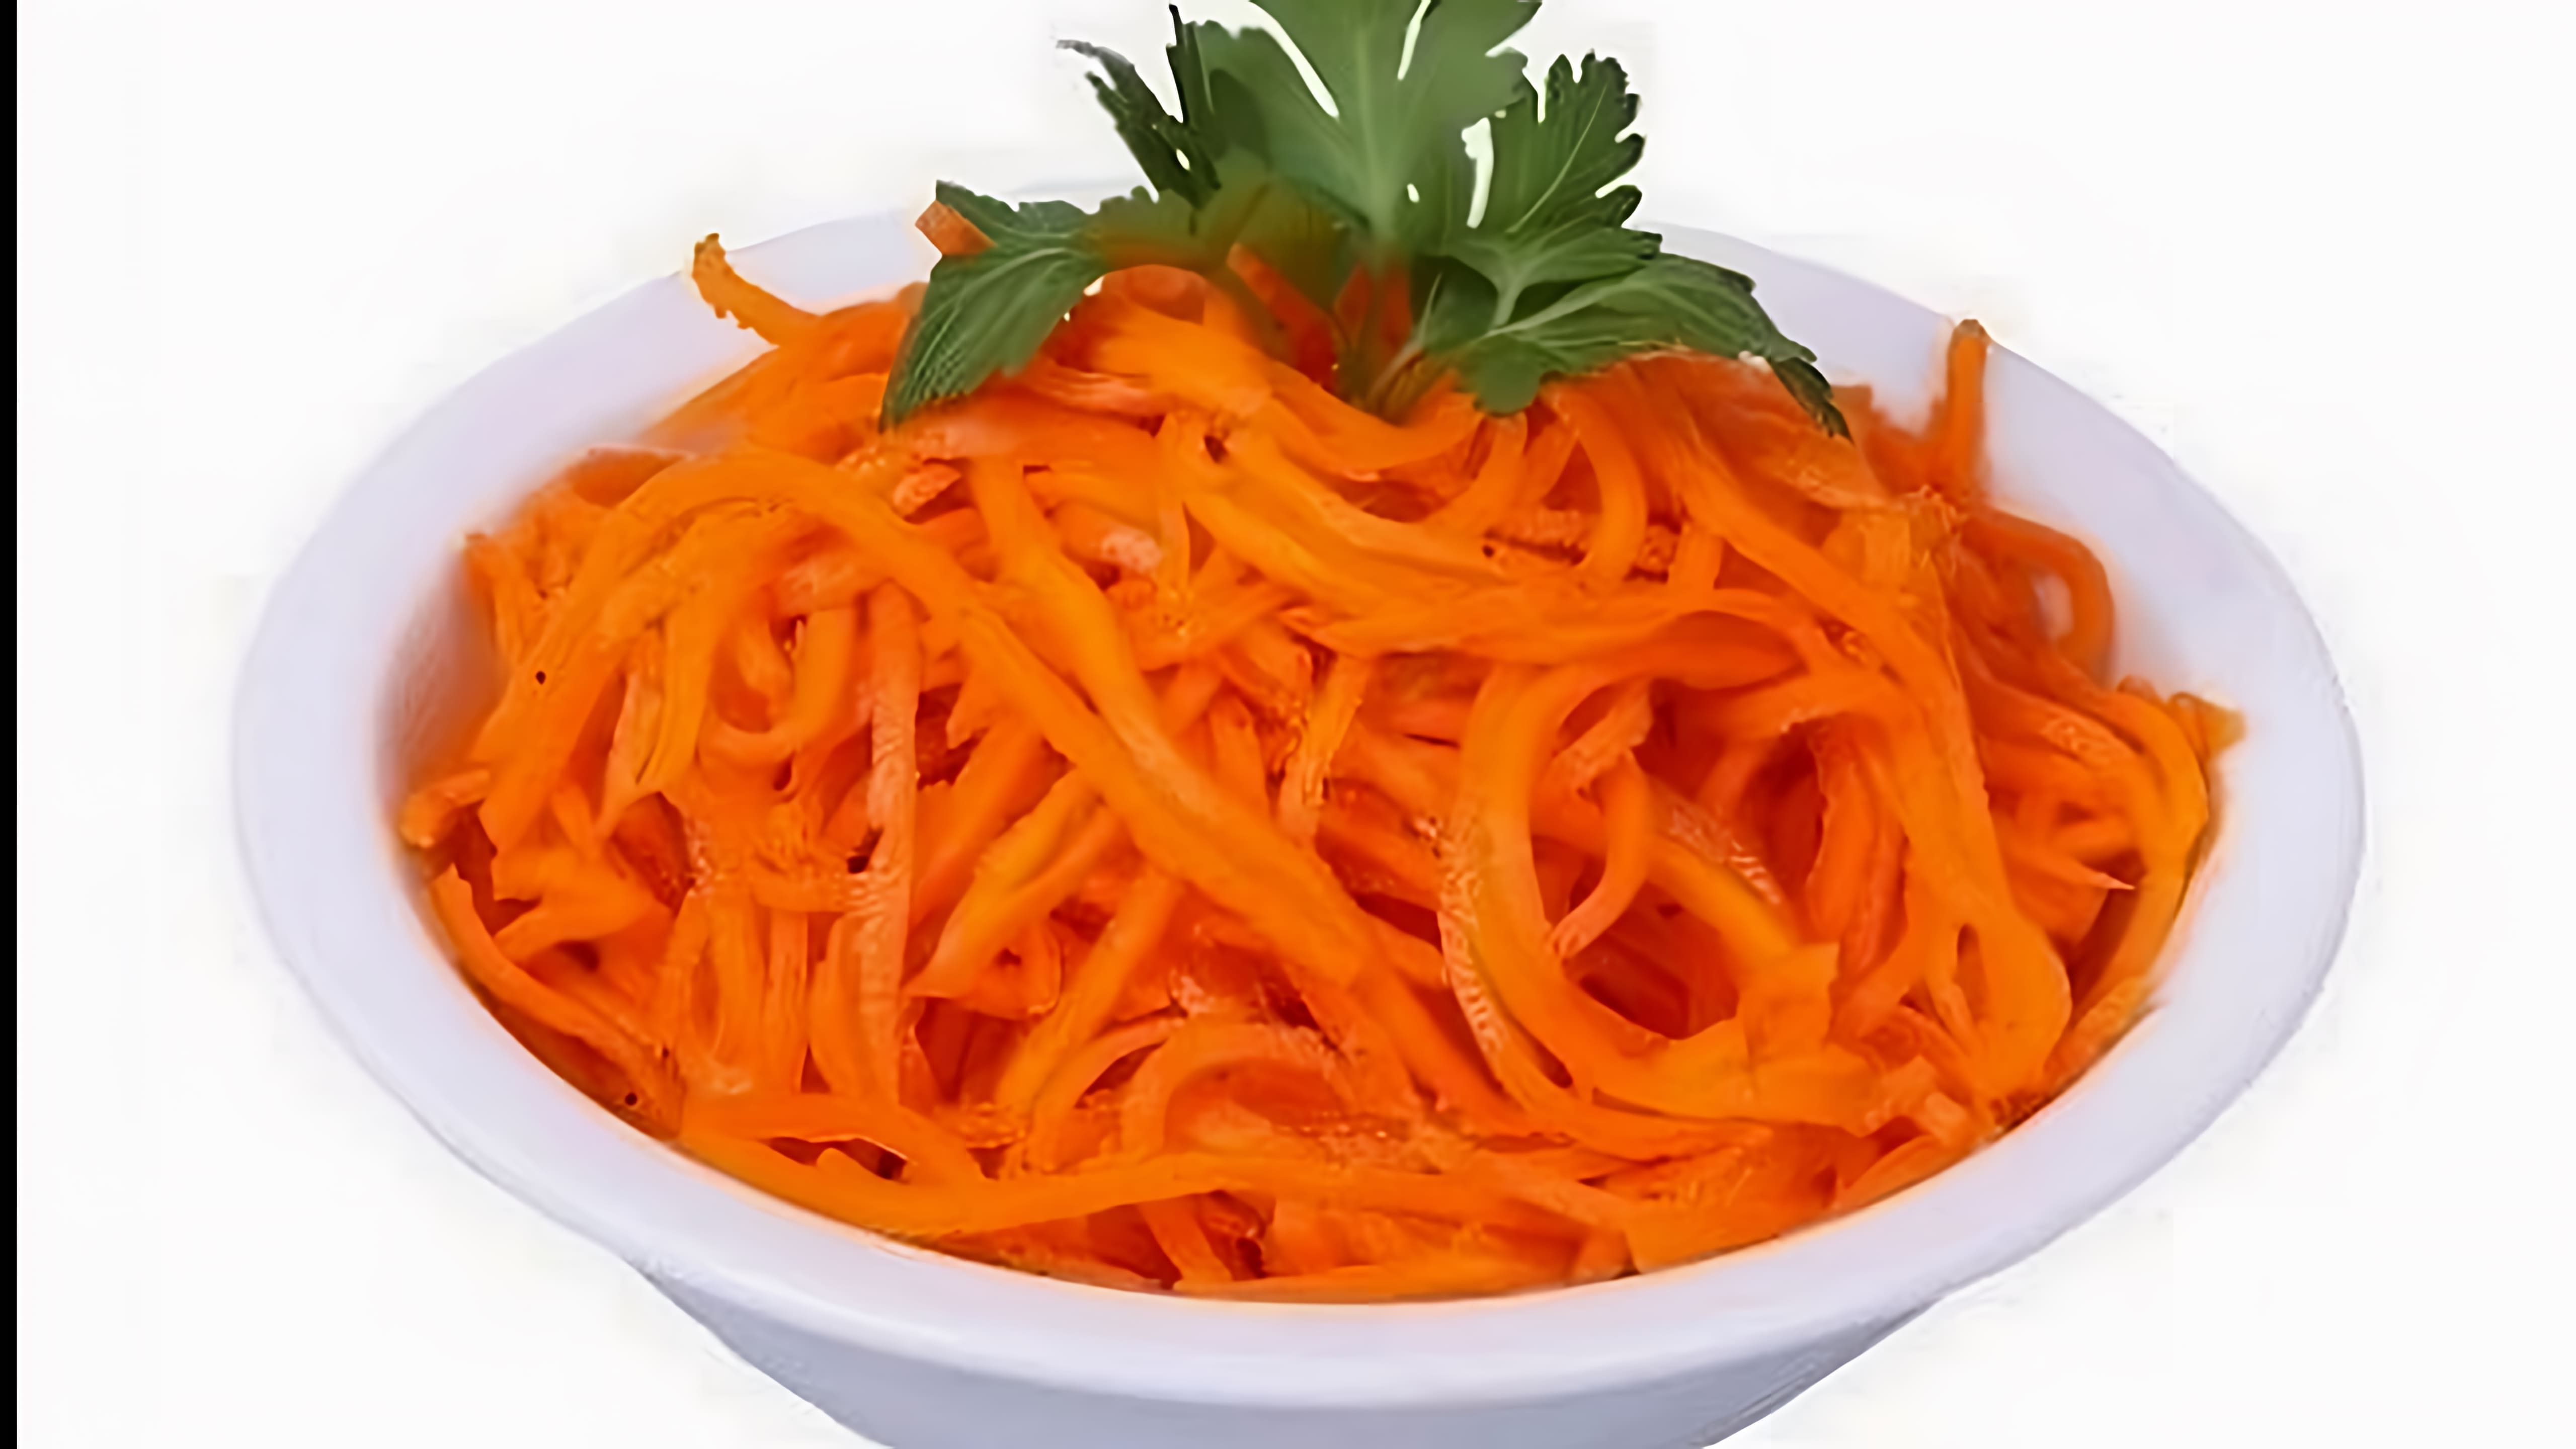 В этом видео демонстрируется простой рецепт приготовления моркови по-корейски